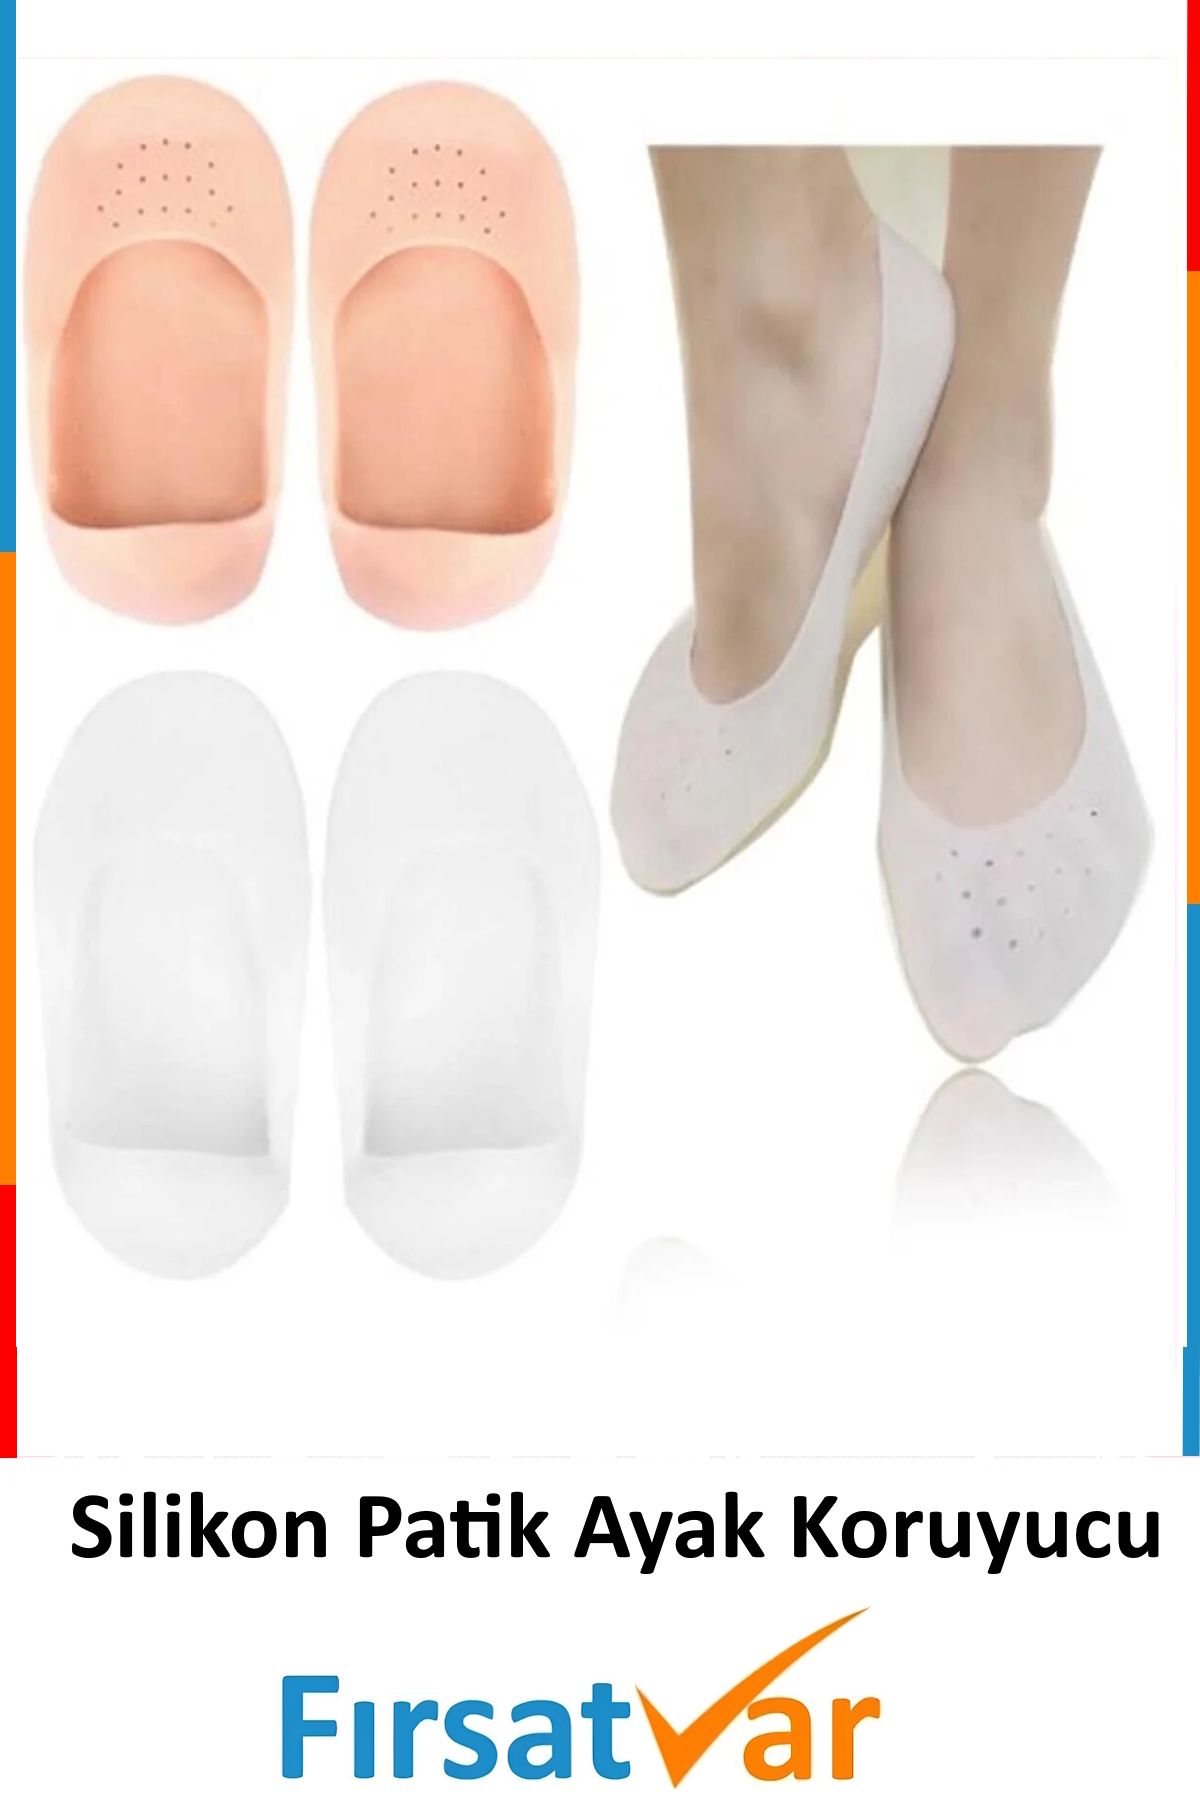 FırsatVar Ayak Kuruma Önleyici Topuk Çatlak Soyulma Önleyici Silikon Patik Çorap Ten Rengi 1 Çift